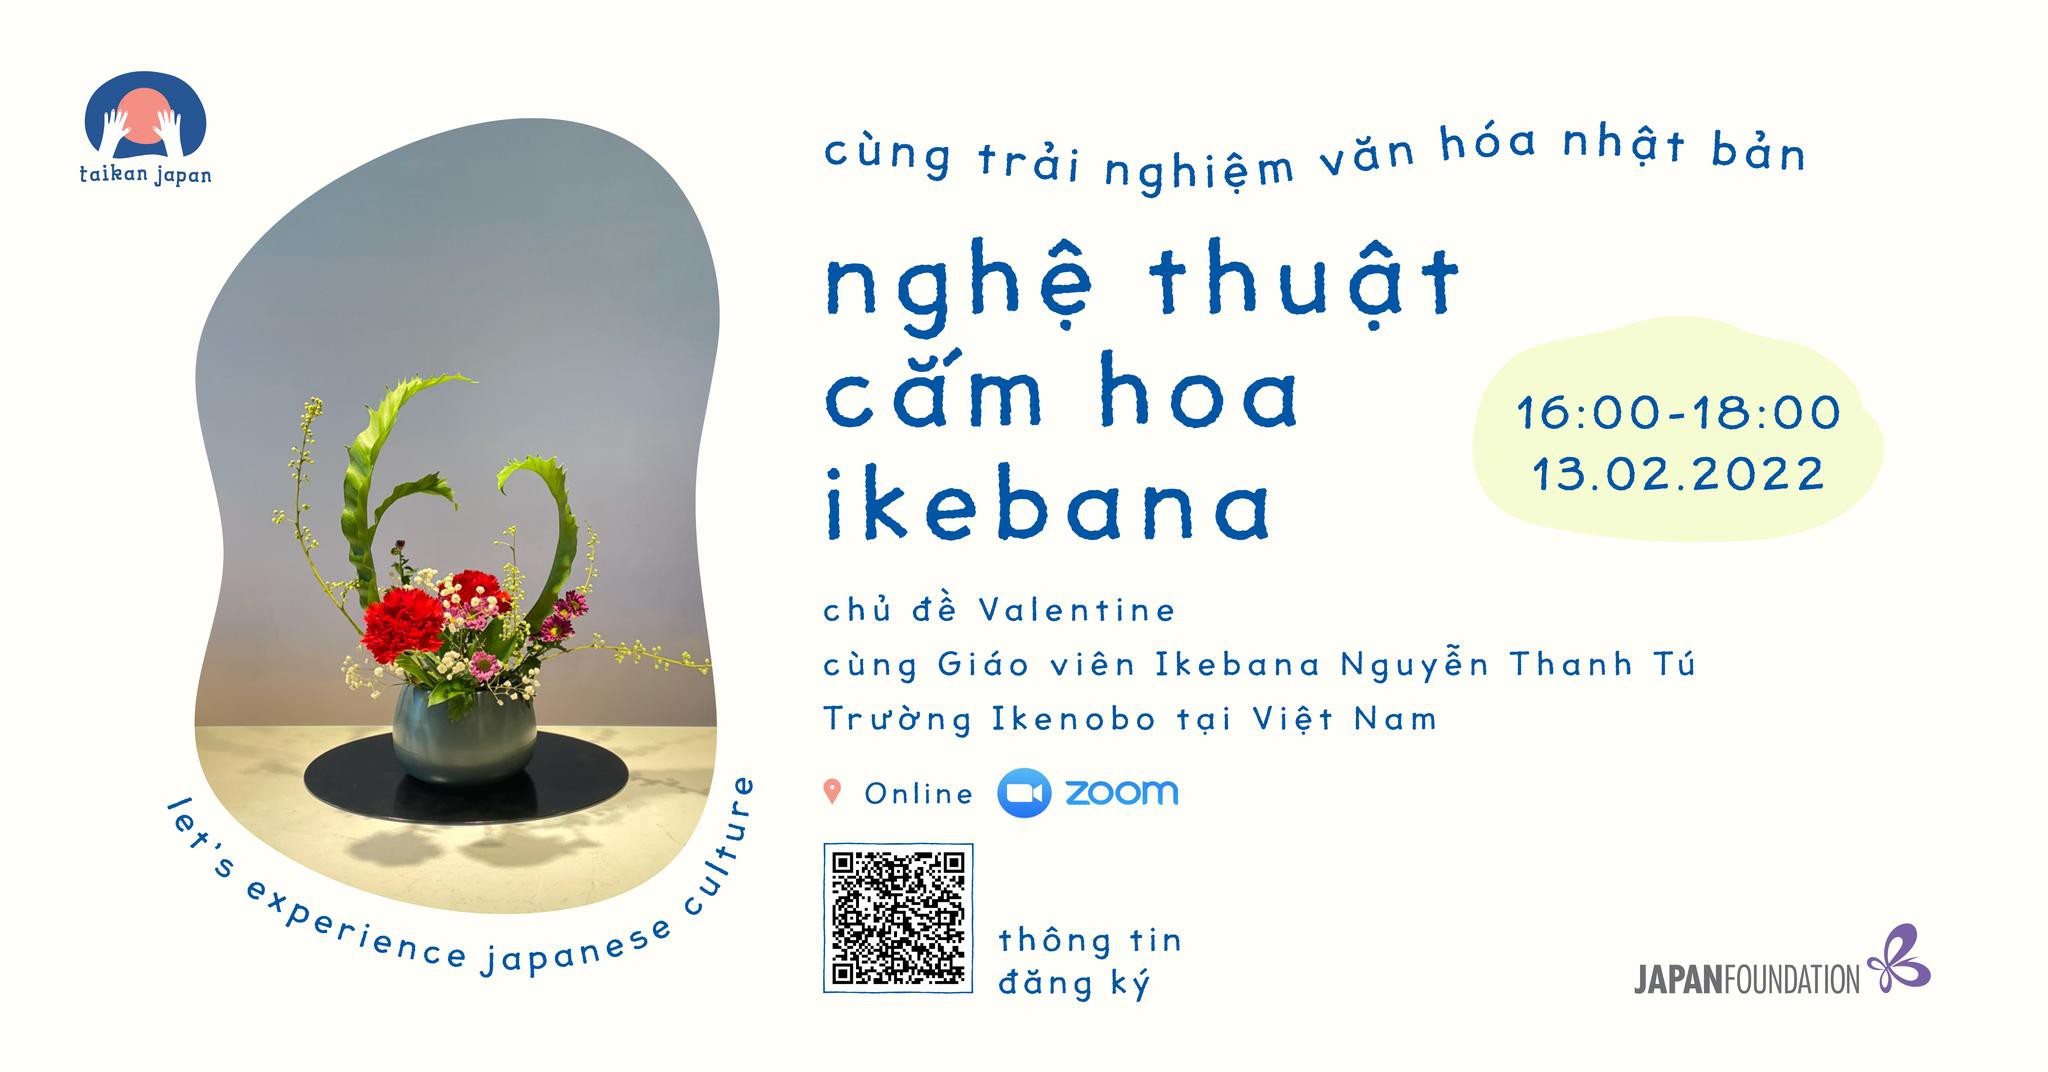 Cùng trải nghiệm Nghệ thuật Cắm hoa Ikebana tại Workshop Taikan Japan - Ngày 13/02/2022